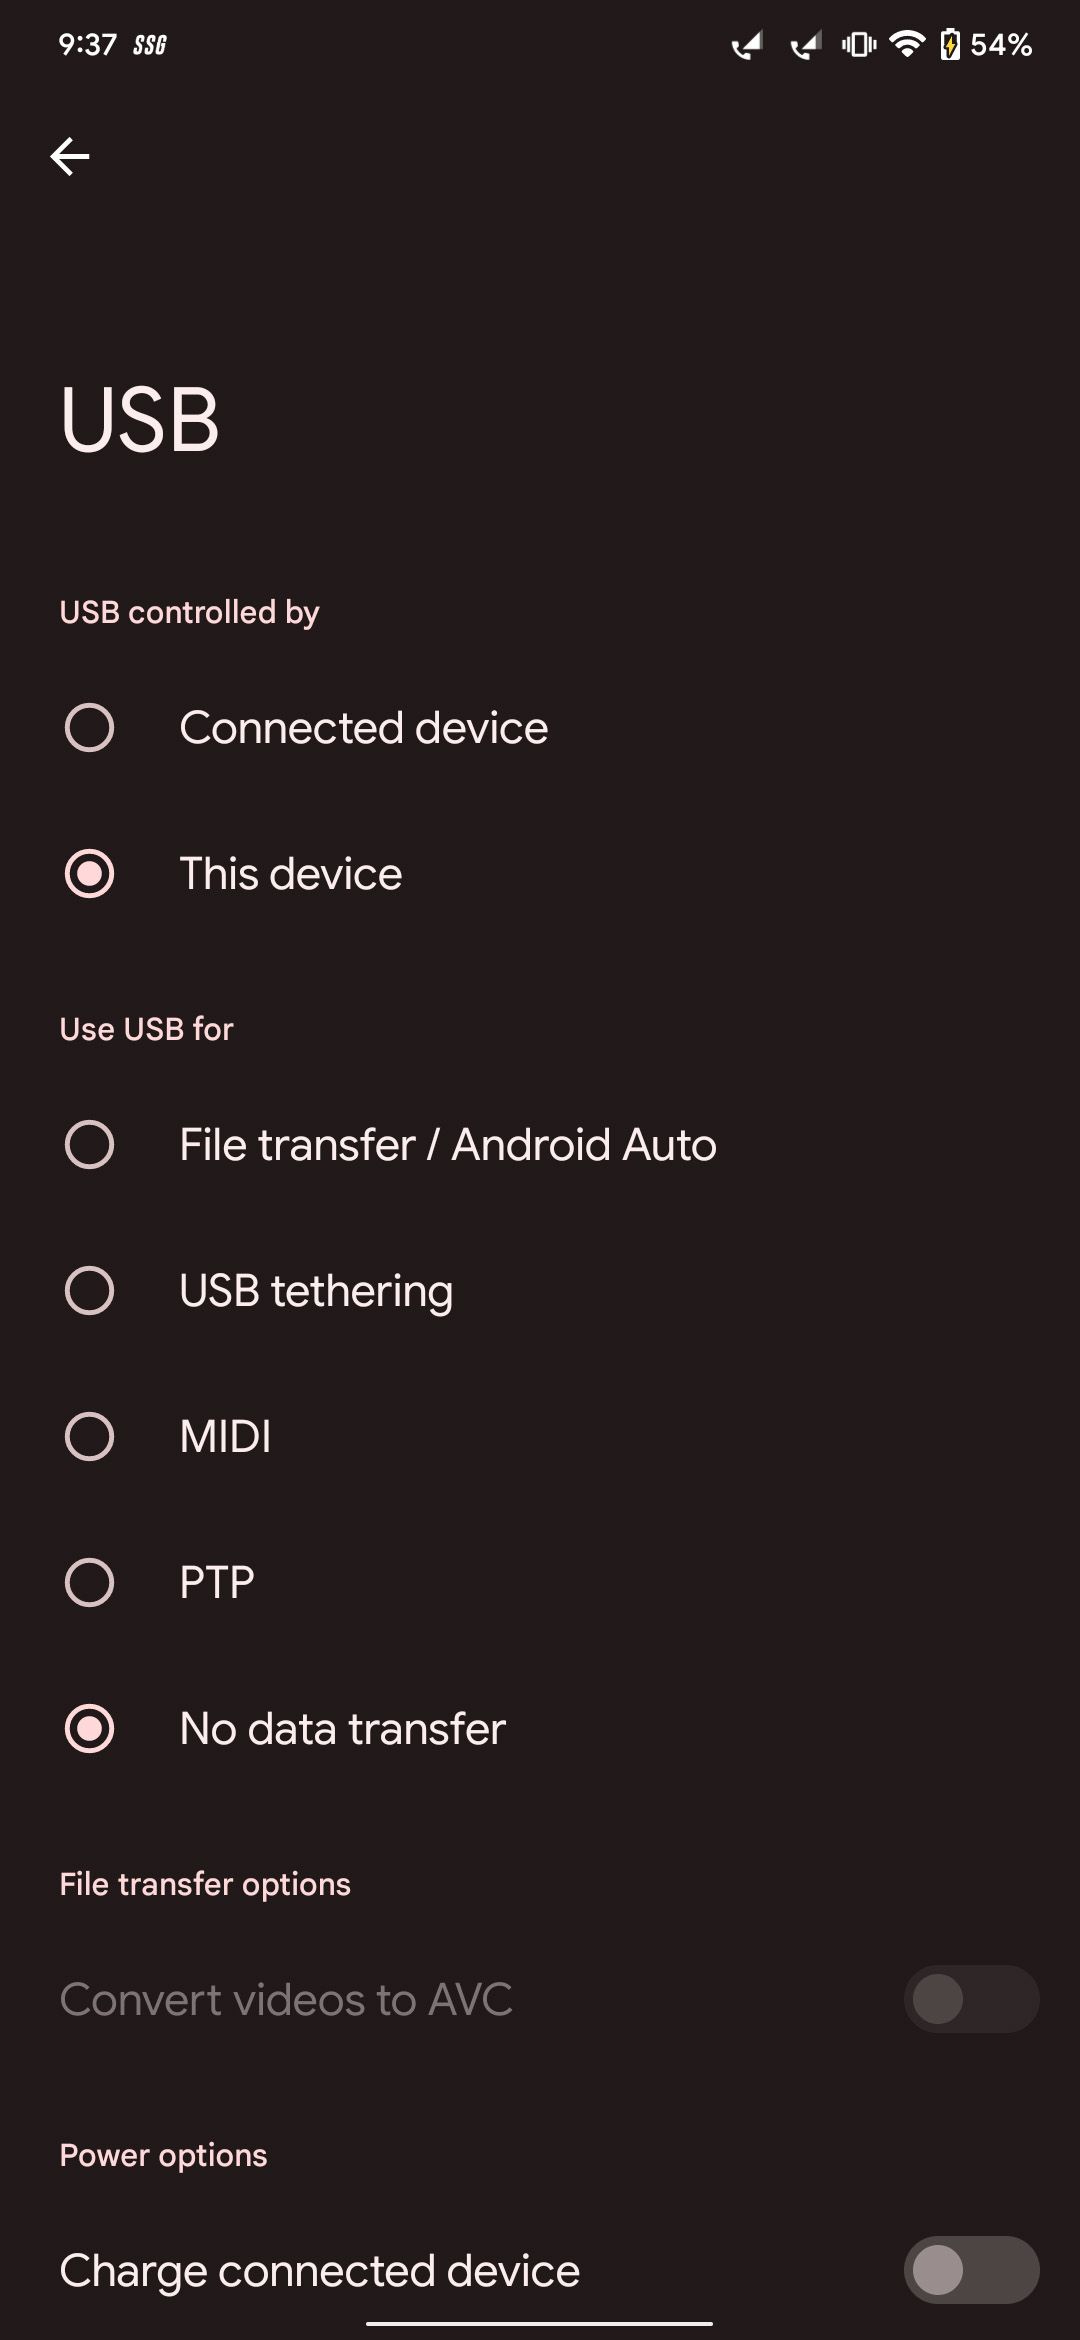 Recursos que podem ser usados ​​via USB